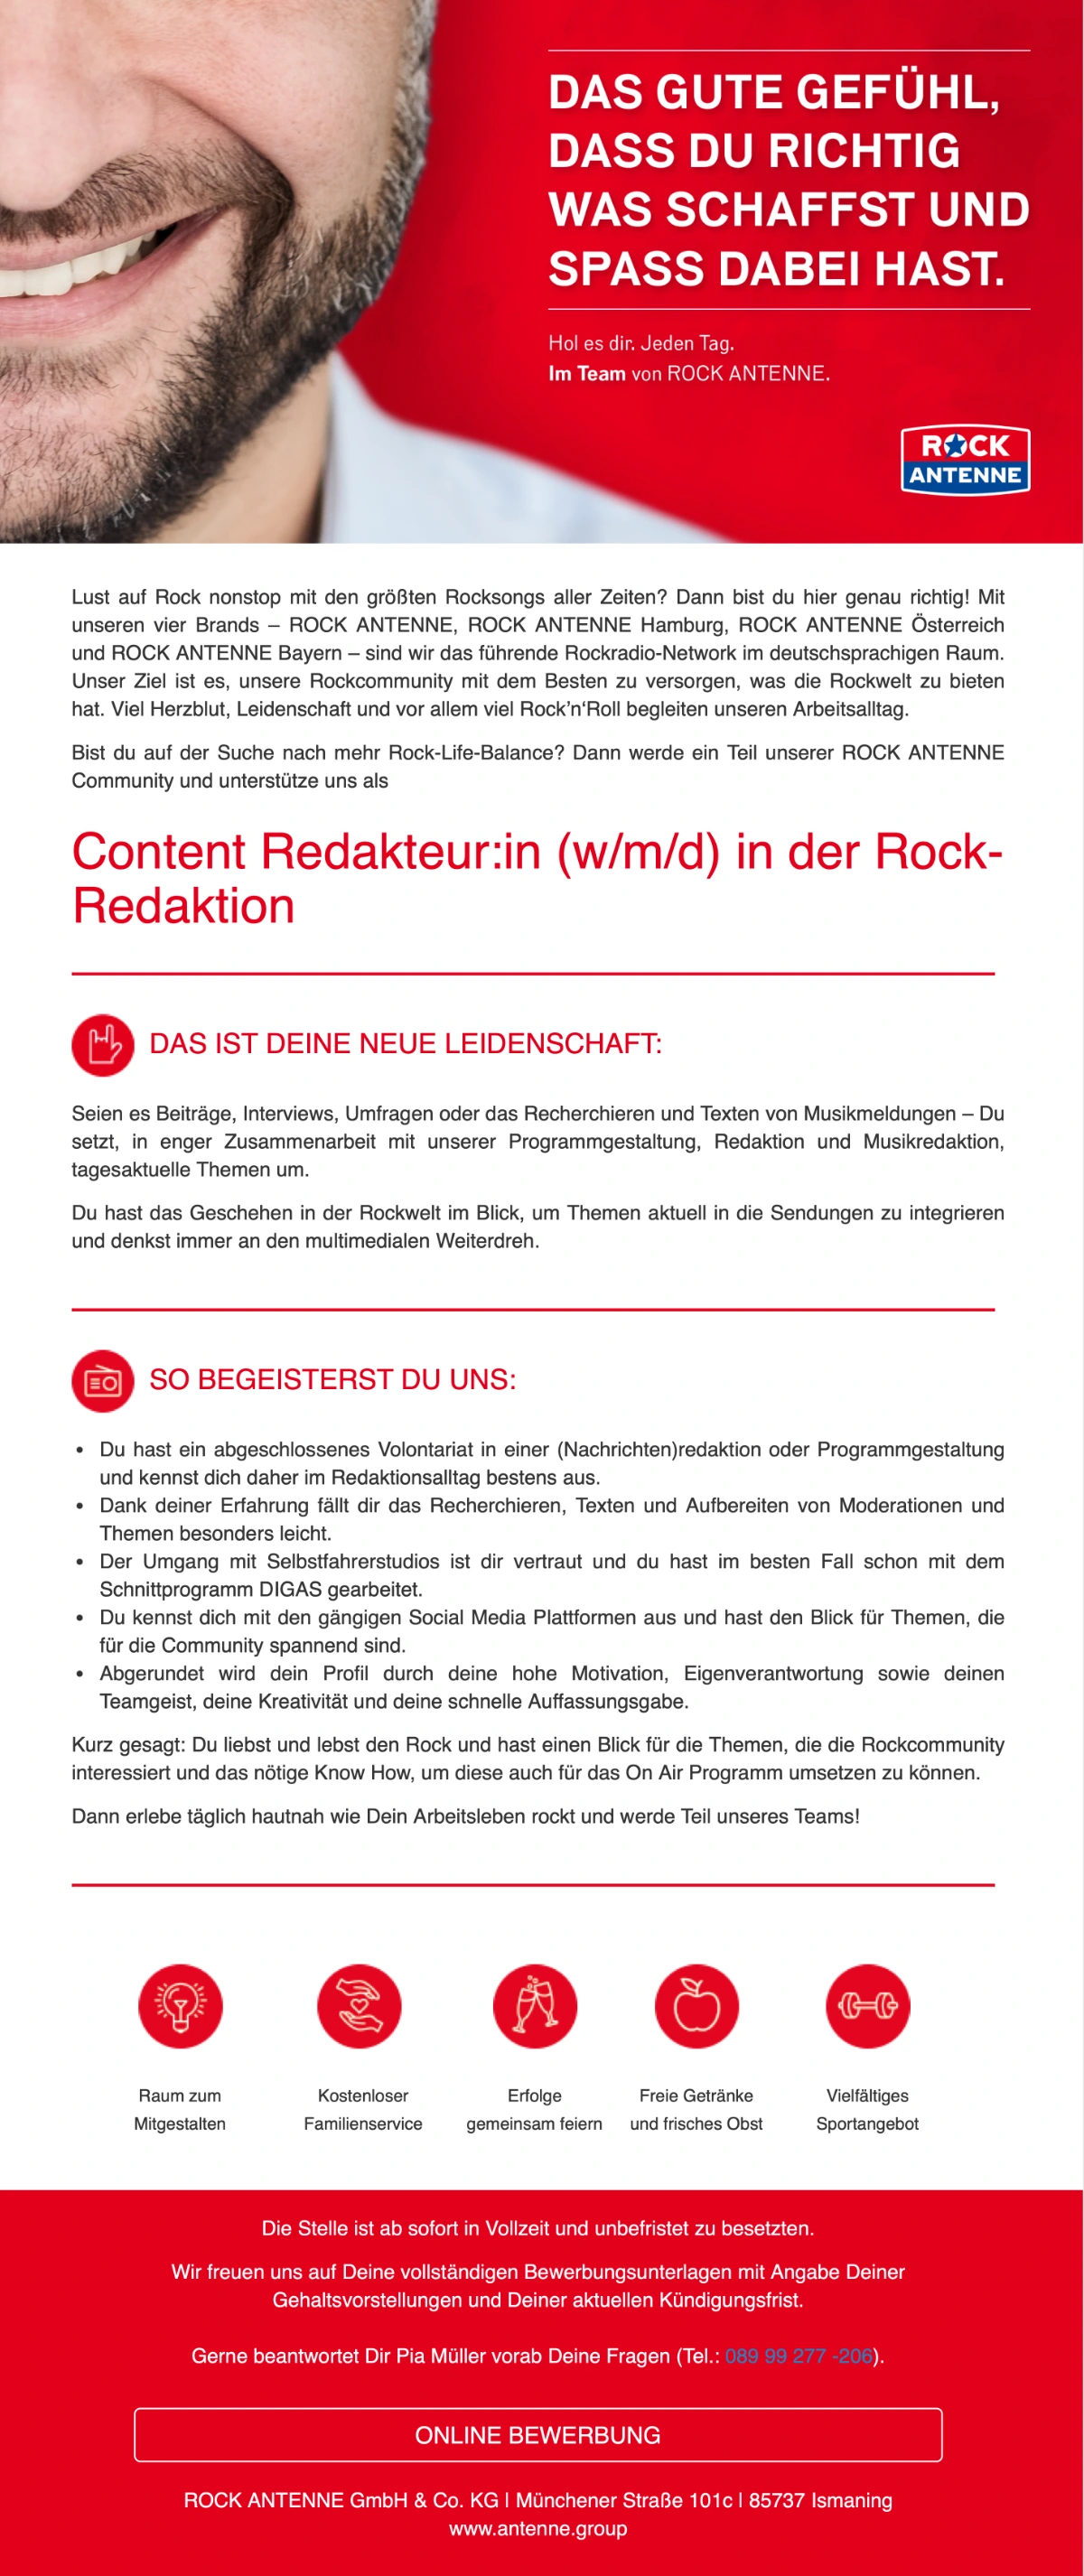 ROCK ANTENNE sucht Content Redakteur:in (w/m/d) in der Rock-Redaktion